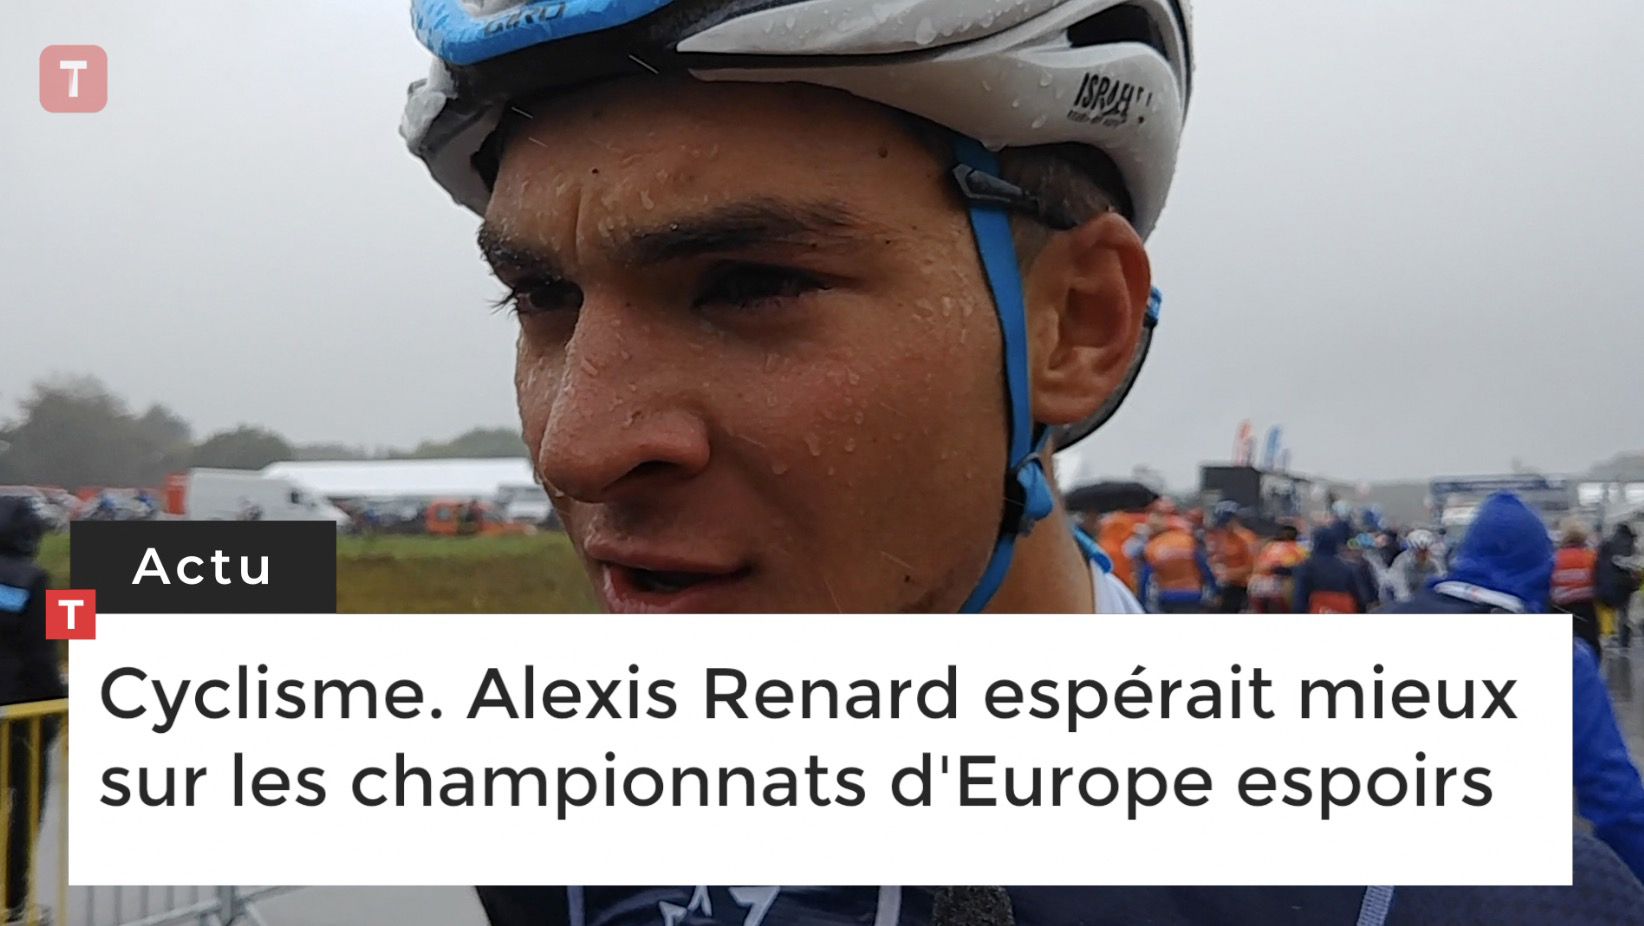 Cyclisme. Alexis Renard espérait mieux sur les championnats d'Europe espoirs  (Le Télégramme)